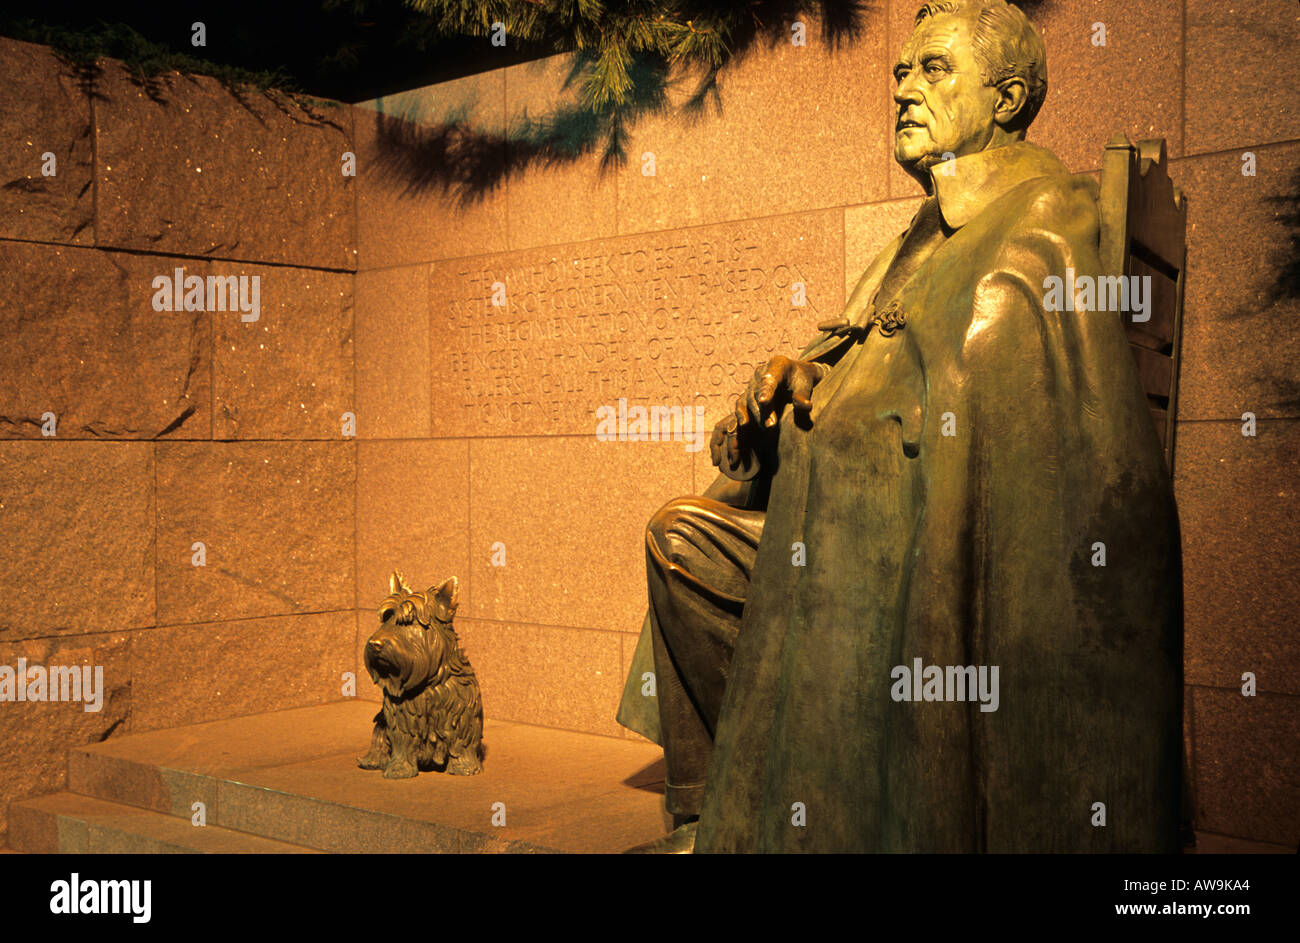 Franklin Delano Roosevelt Memorial avec Fala, chien de FDR scu; pted par l'artiste Neil Esternl la nuit à Washington, DC, Etats-Unis. Banque D'Images